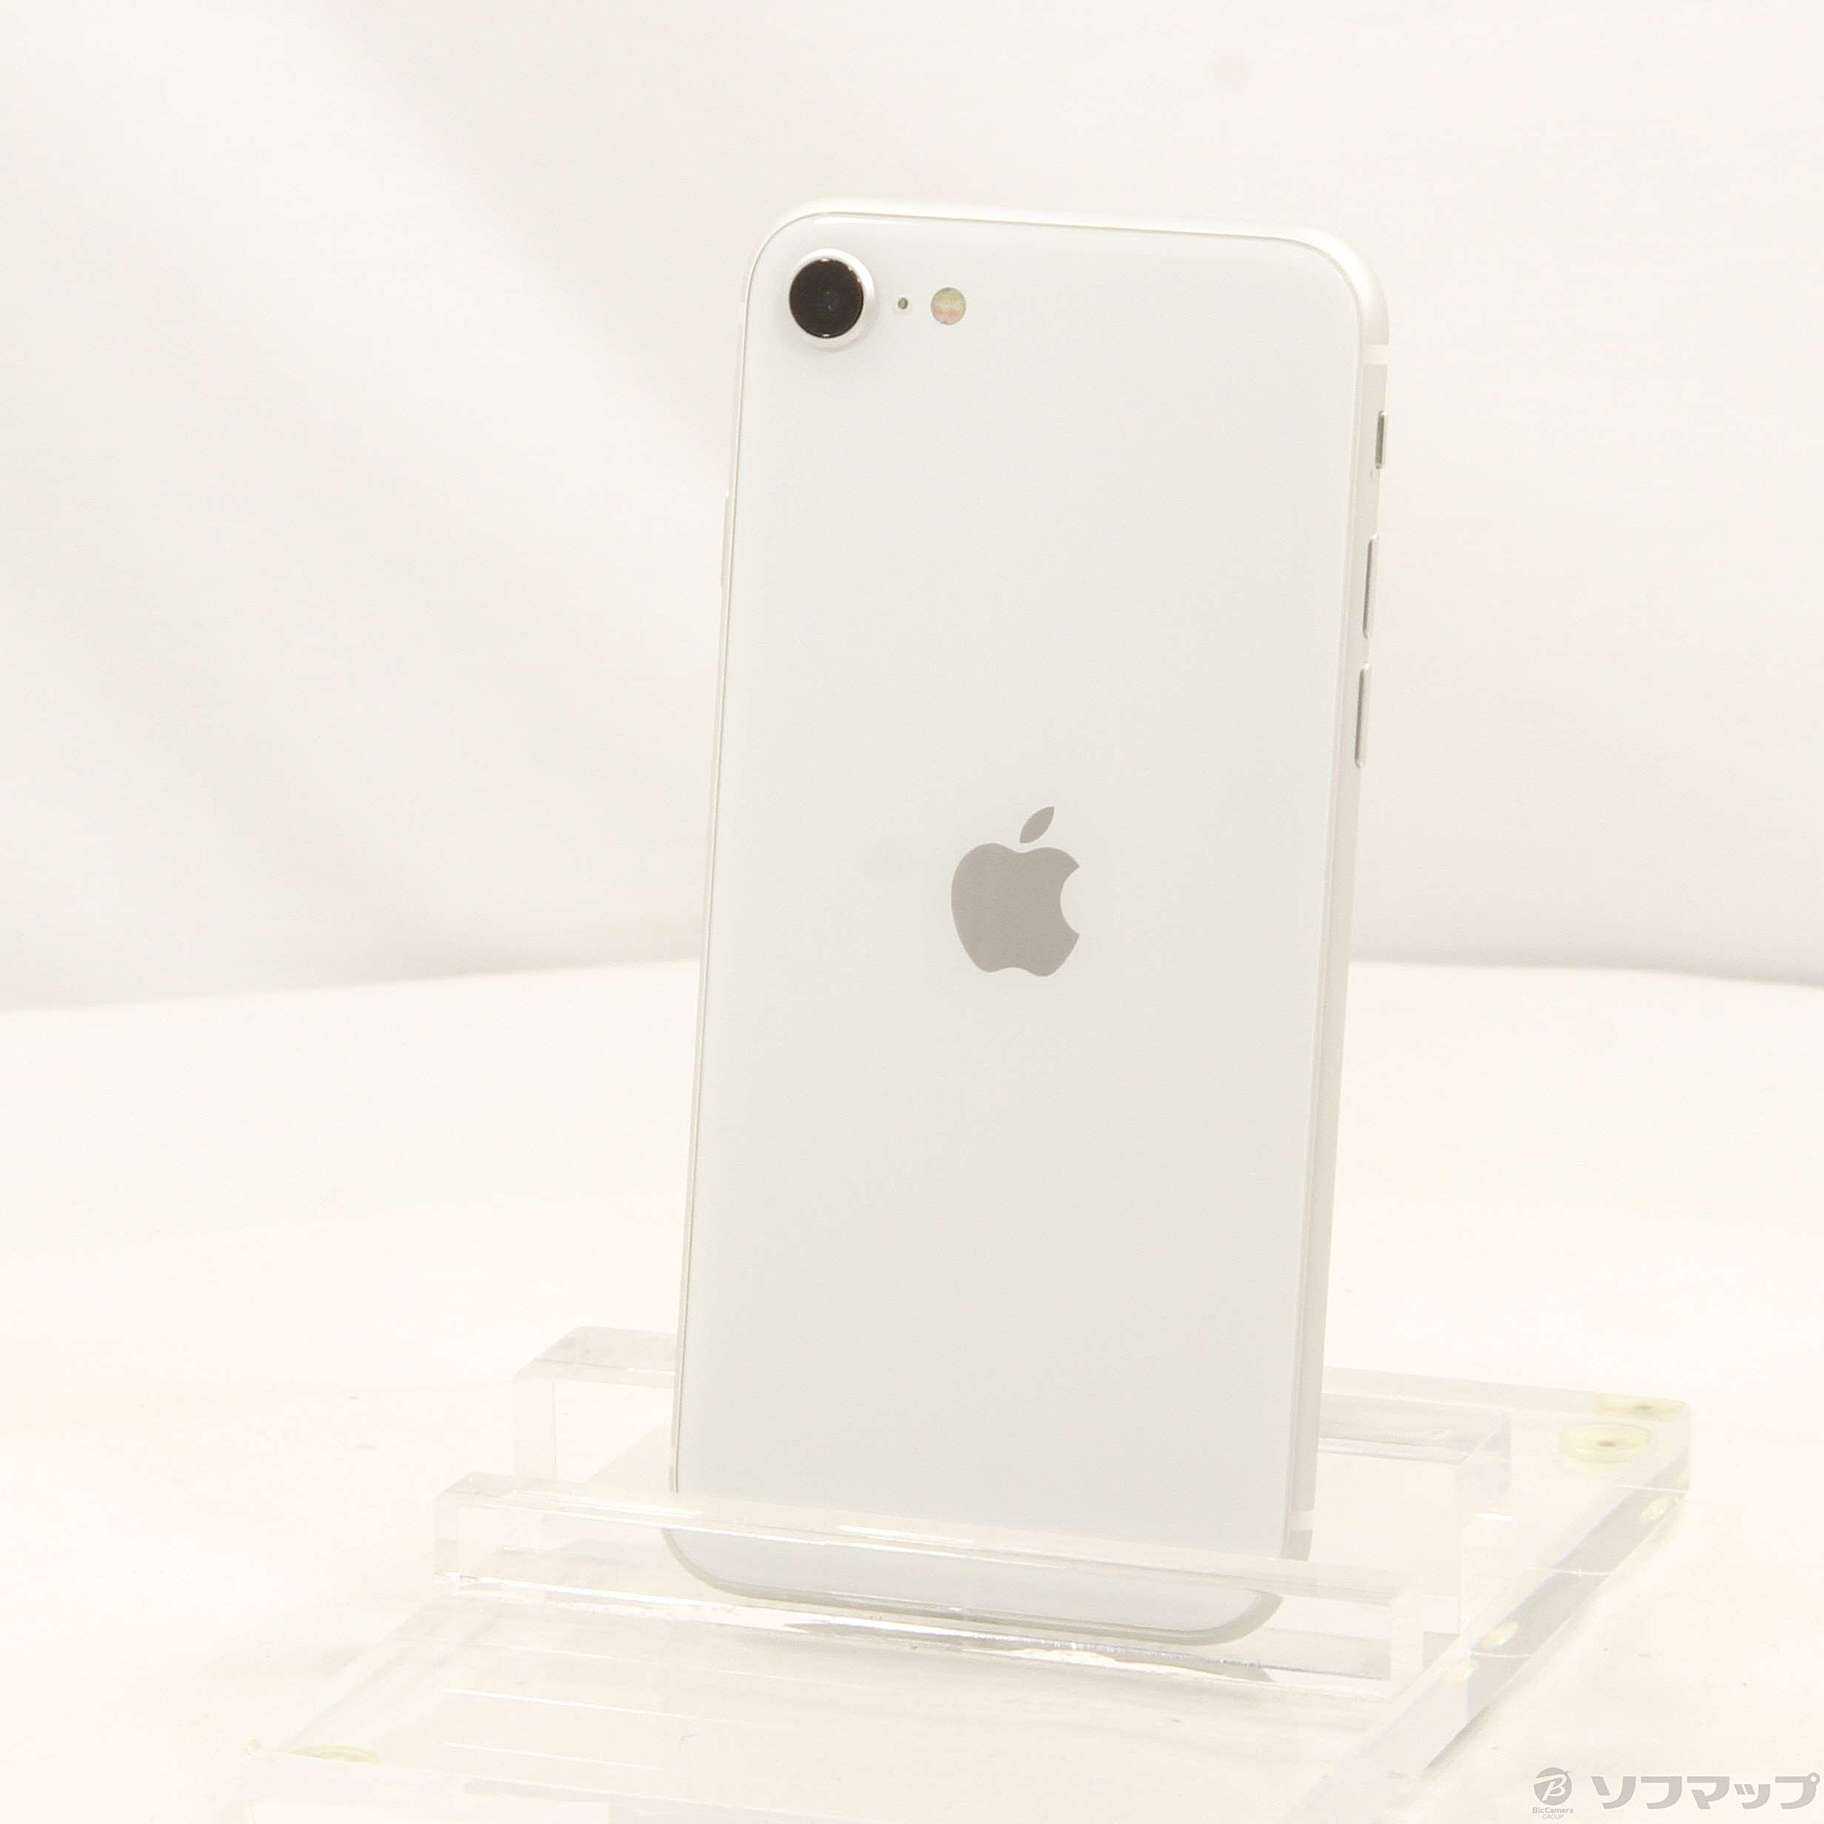 iPhone SE 第2世代 (SE2) ホワイト 128 GB SIMフリーなし